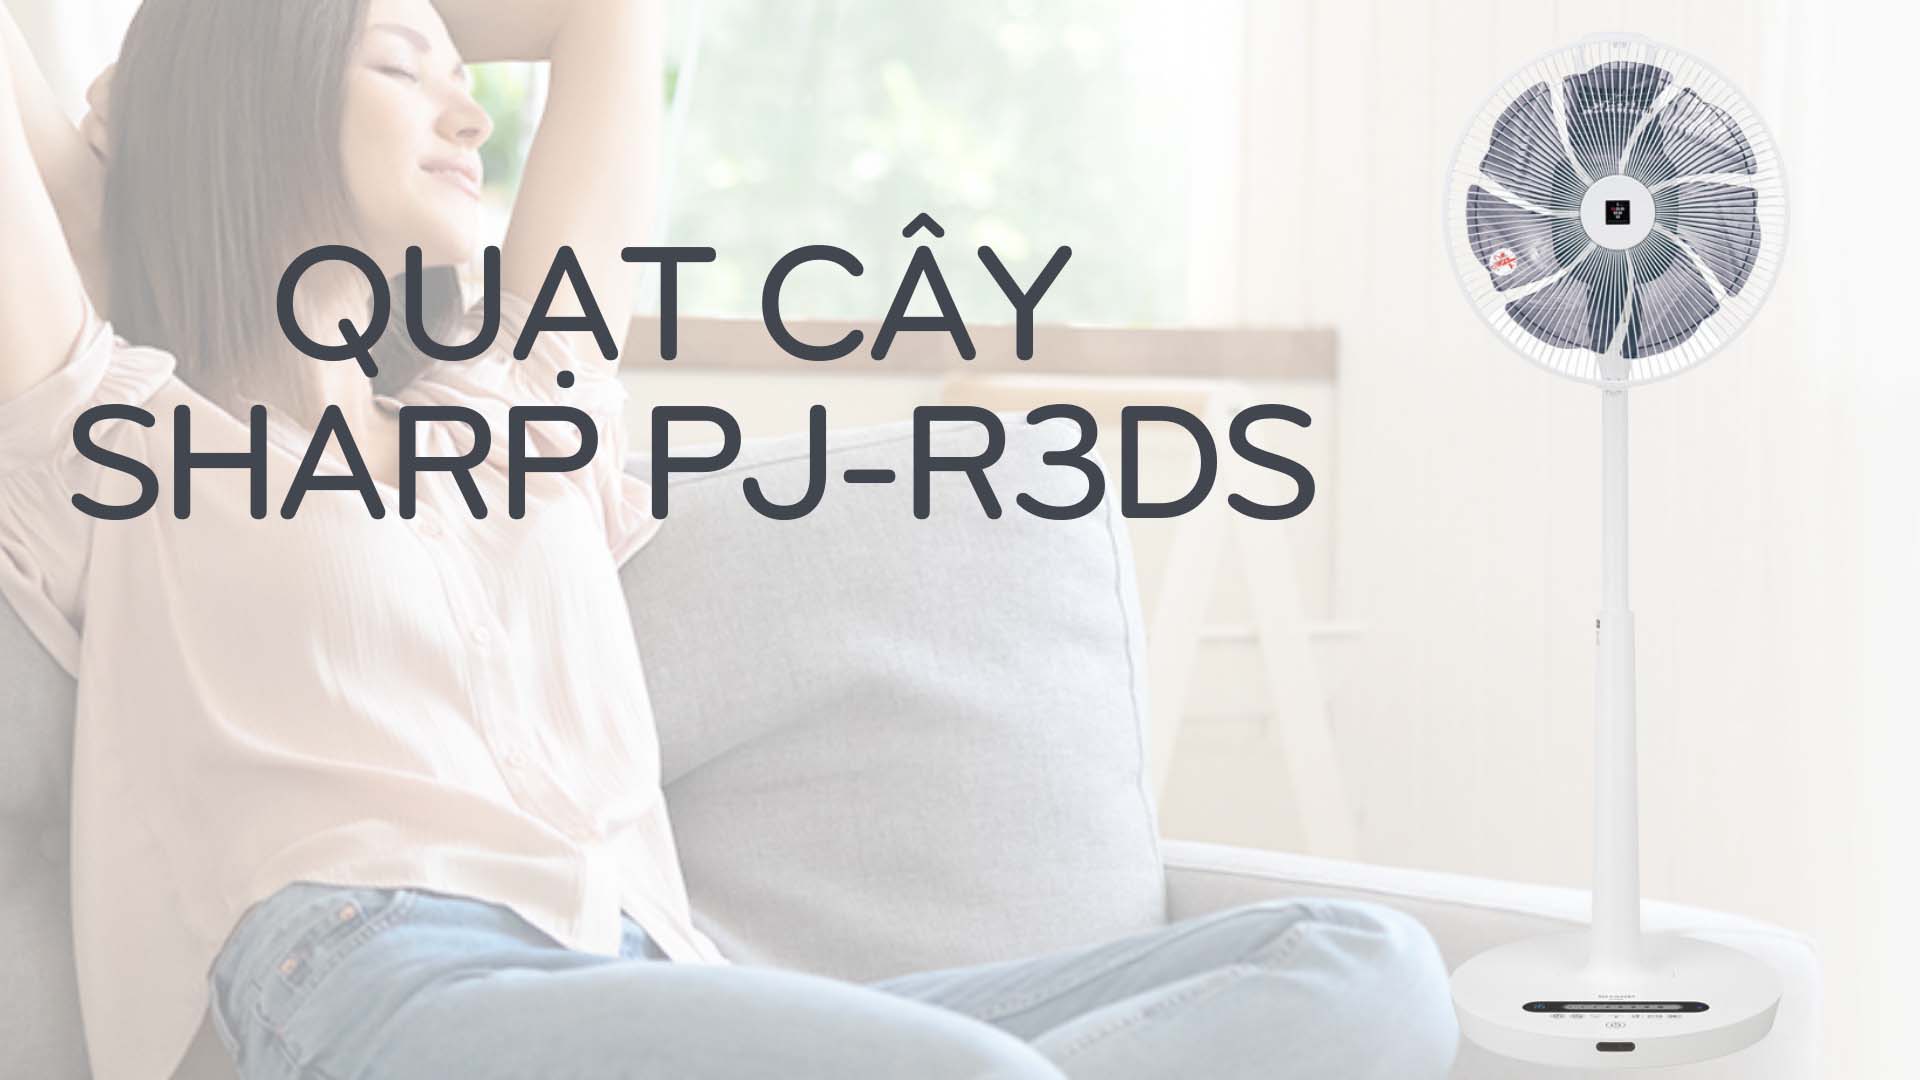 quat-cay-sharp-pj-r3ds